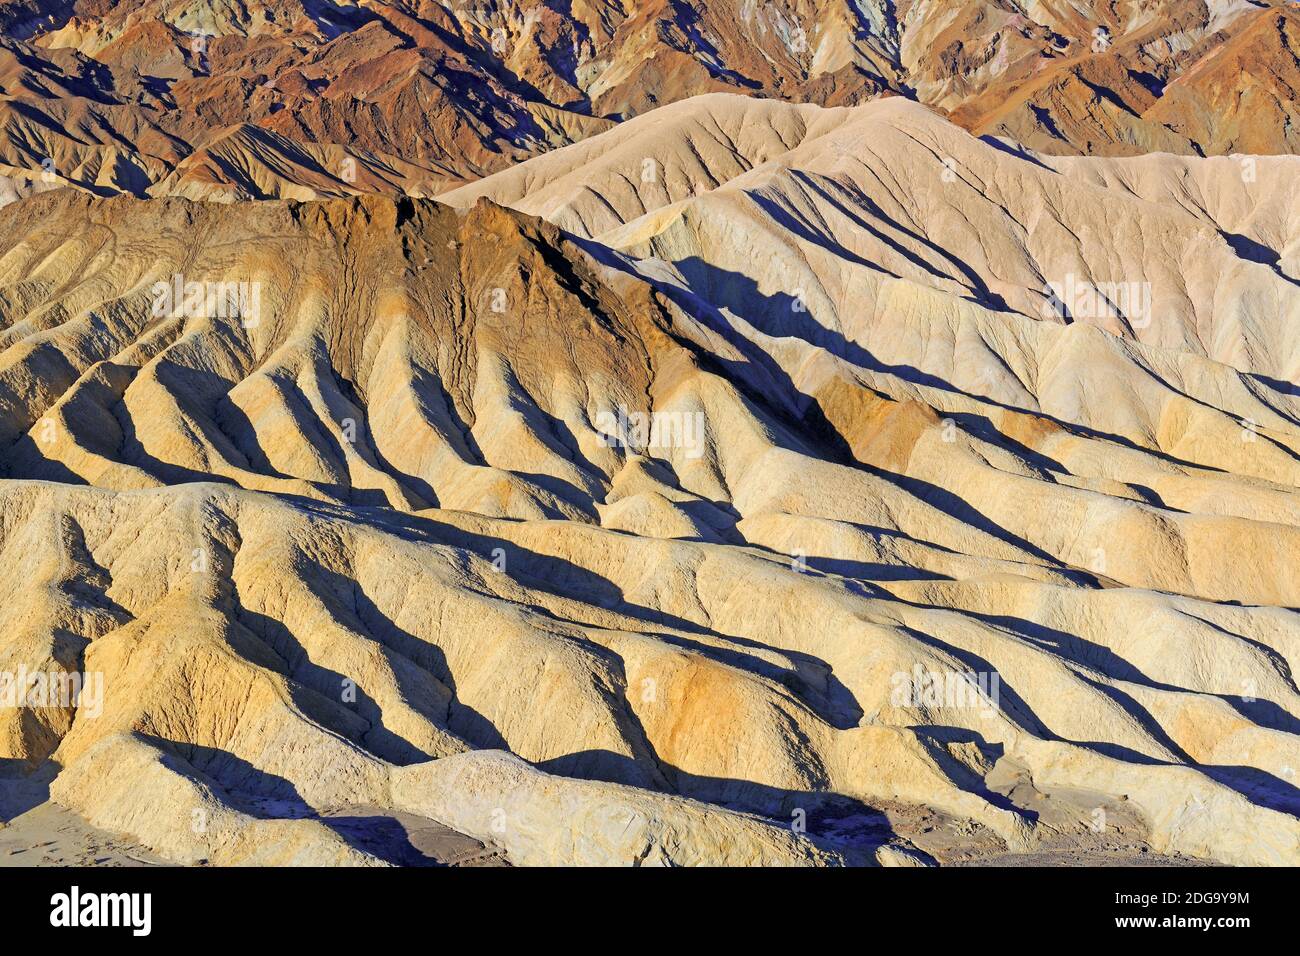 Farbige Gesteinsformationen bei Sonnenaufgang am Zabriske Point, Death Valley Nationalpark, Kalifornien, USA Stock Photo